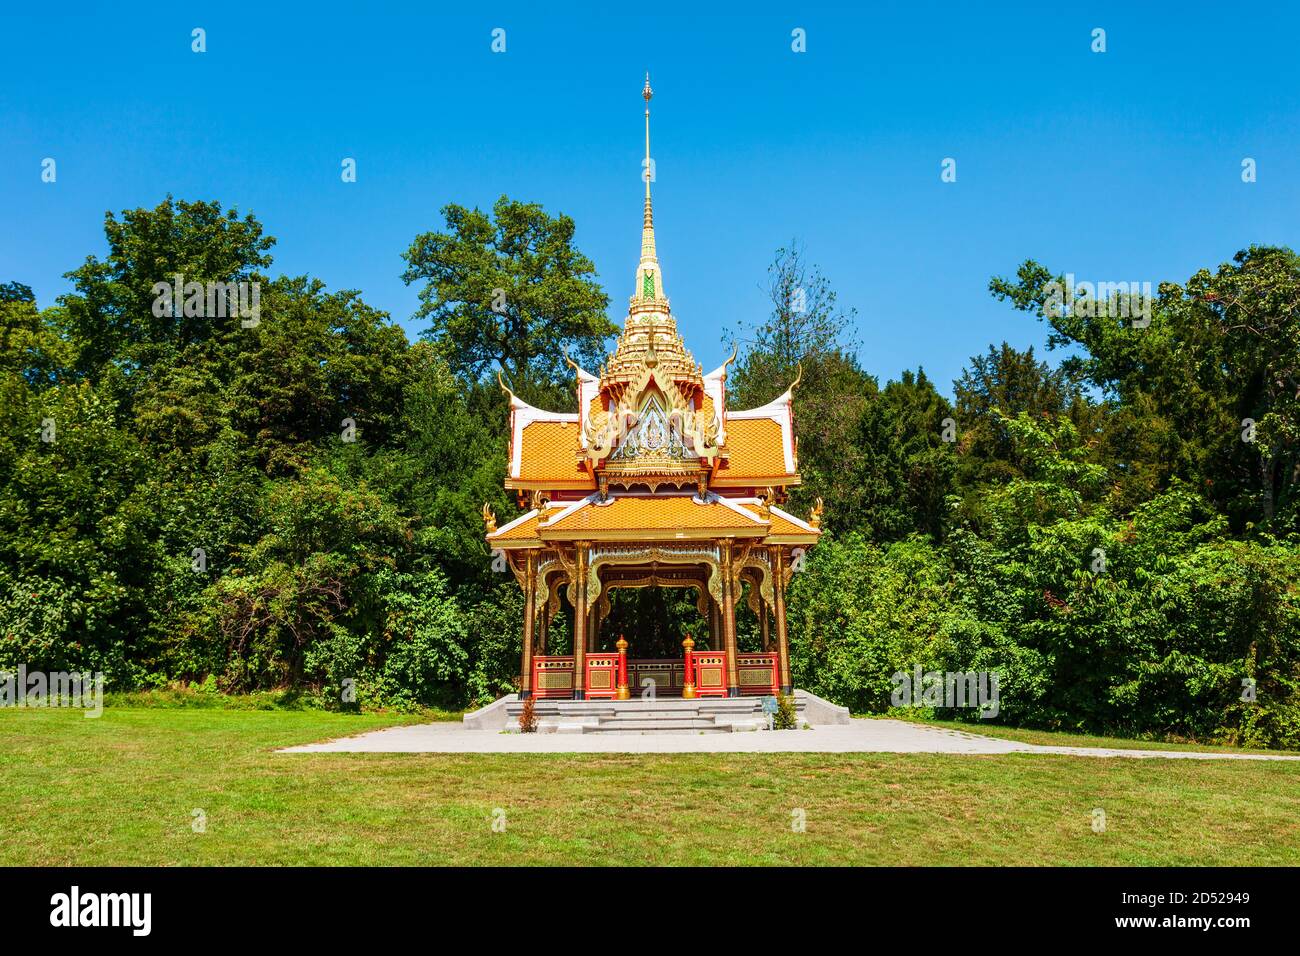 Thai Pavilion oder Pavillon Thailandais ist eine buddhistische Pagode  Tempel in Thailand Stil in der Stadt Lausanne in der Schweiz  Stockfotografie - Alamy